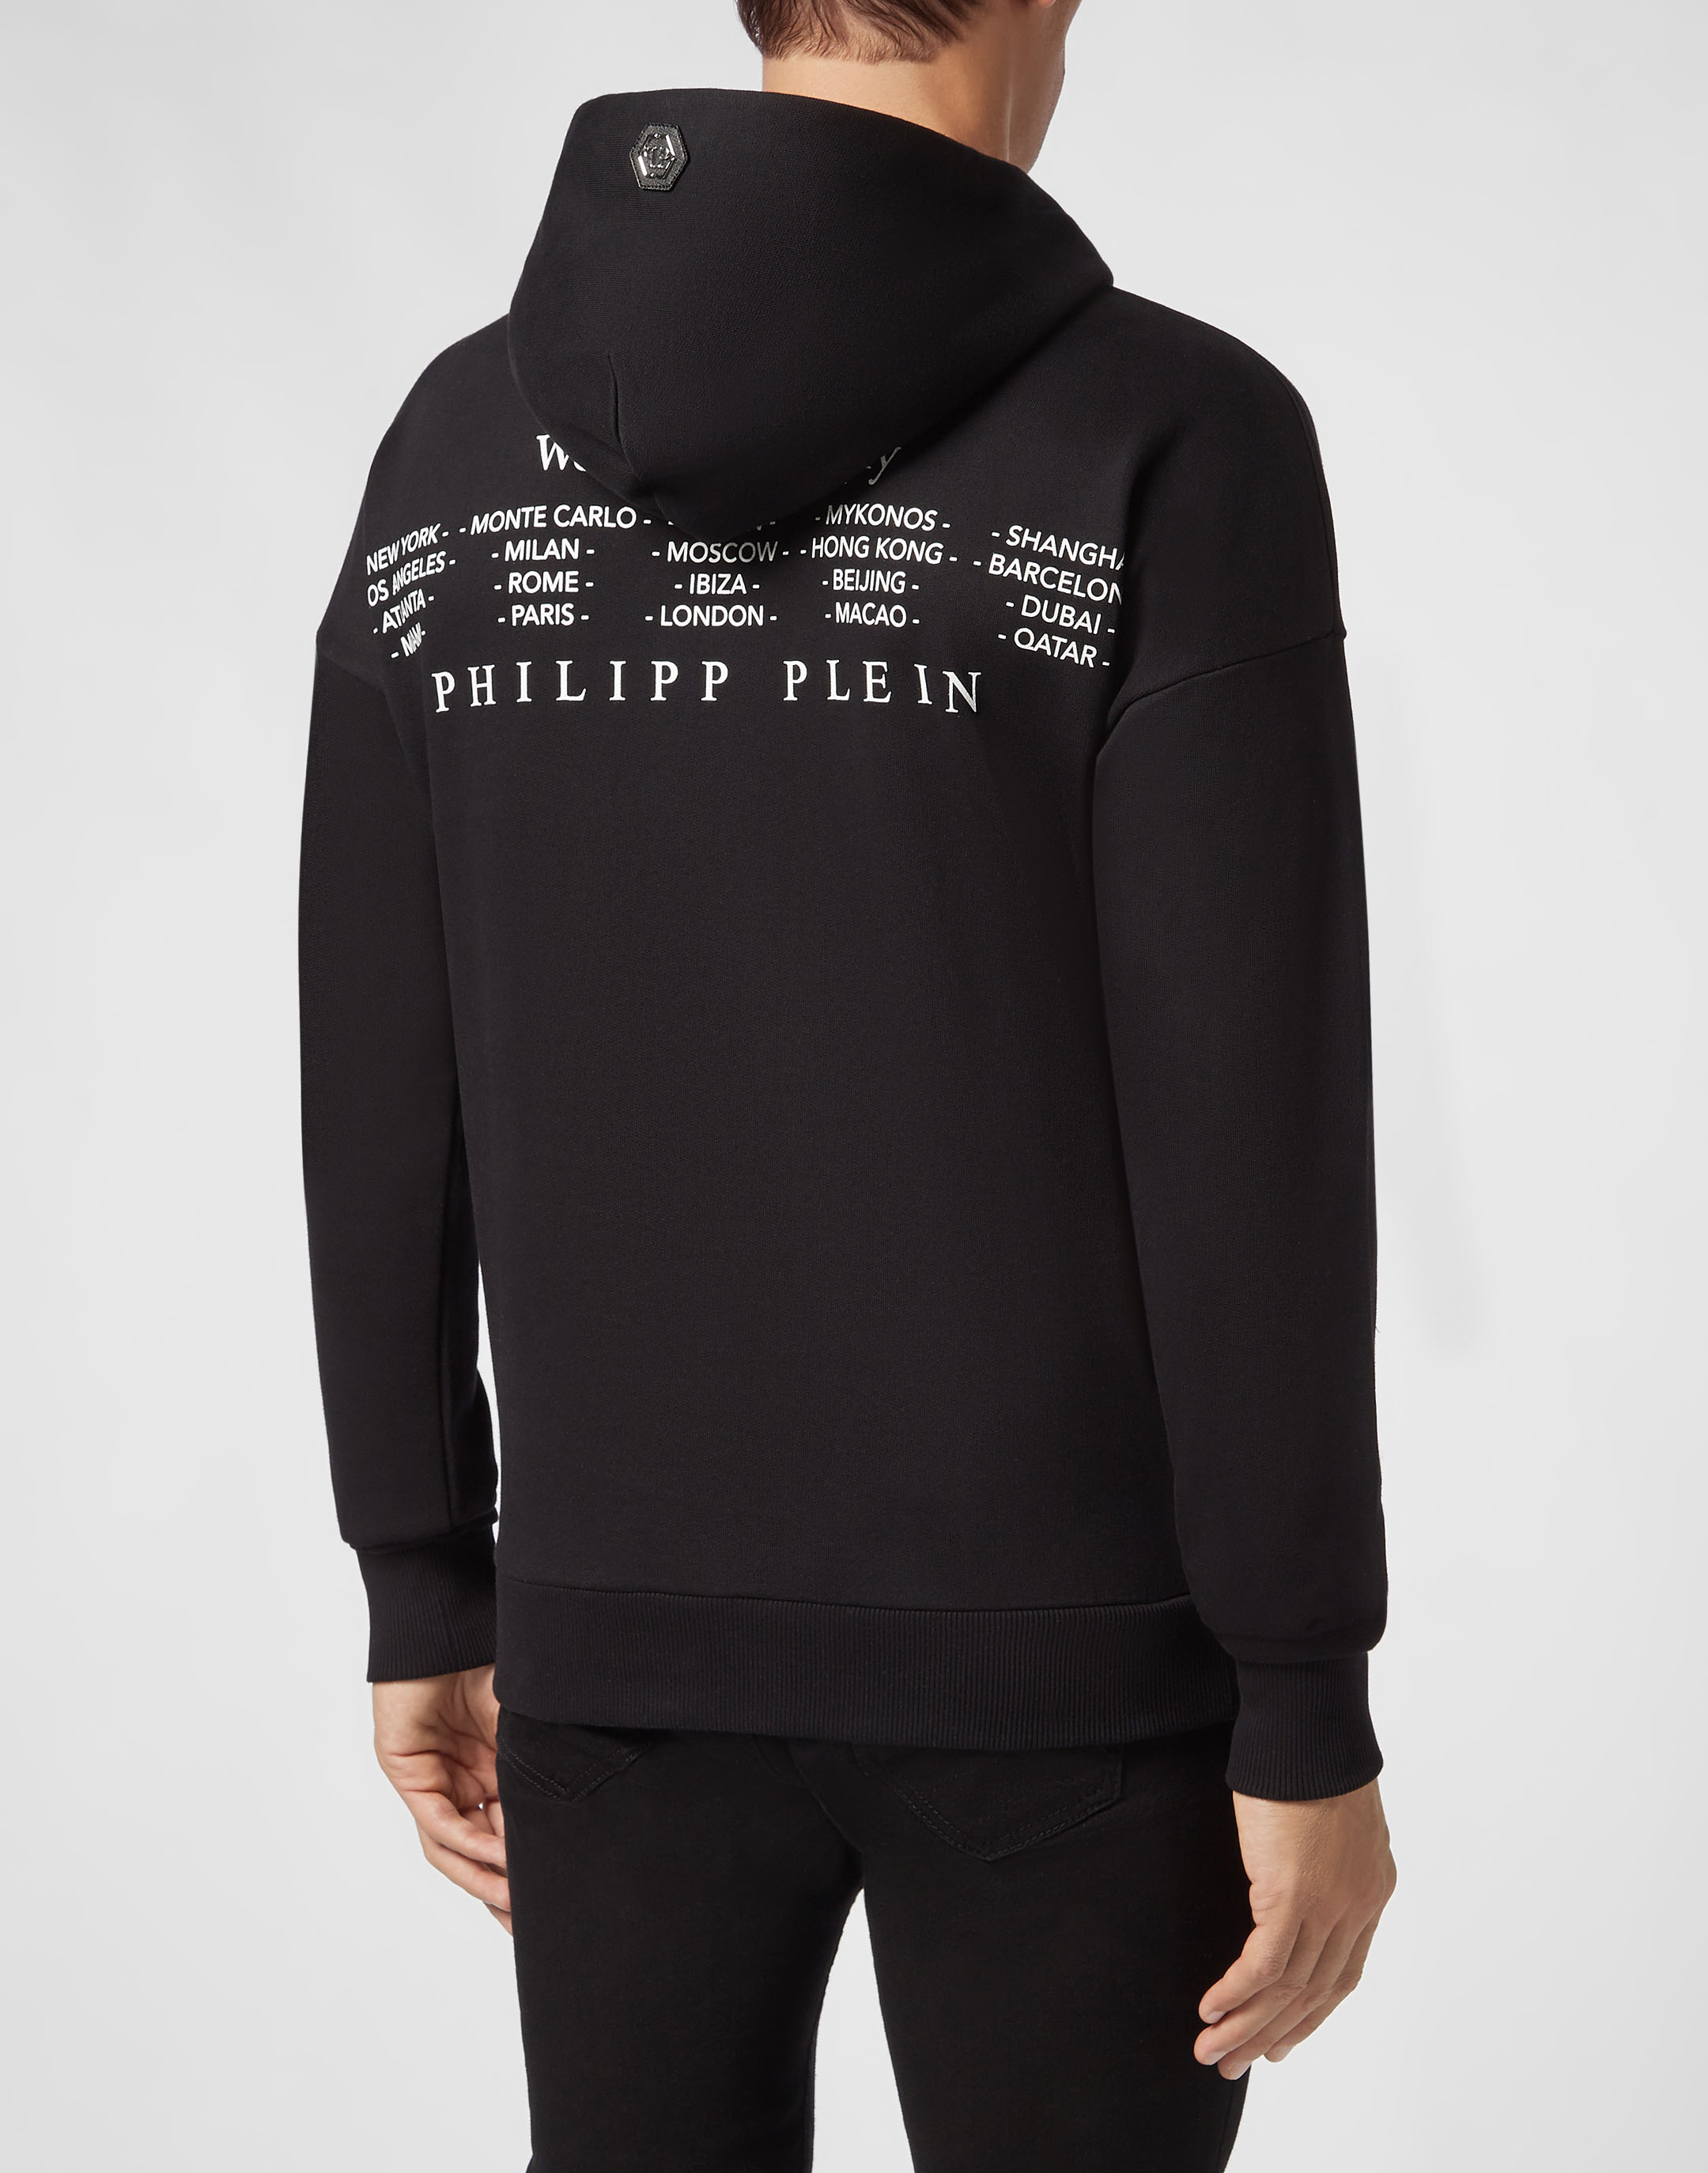 Hoodie sweatshirt P.L.N. | Philipp Plein Outlet